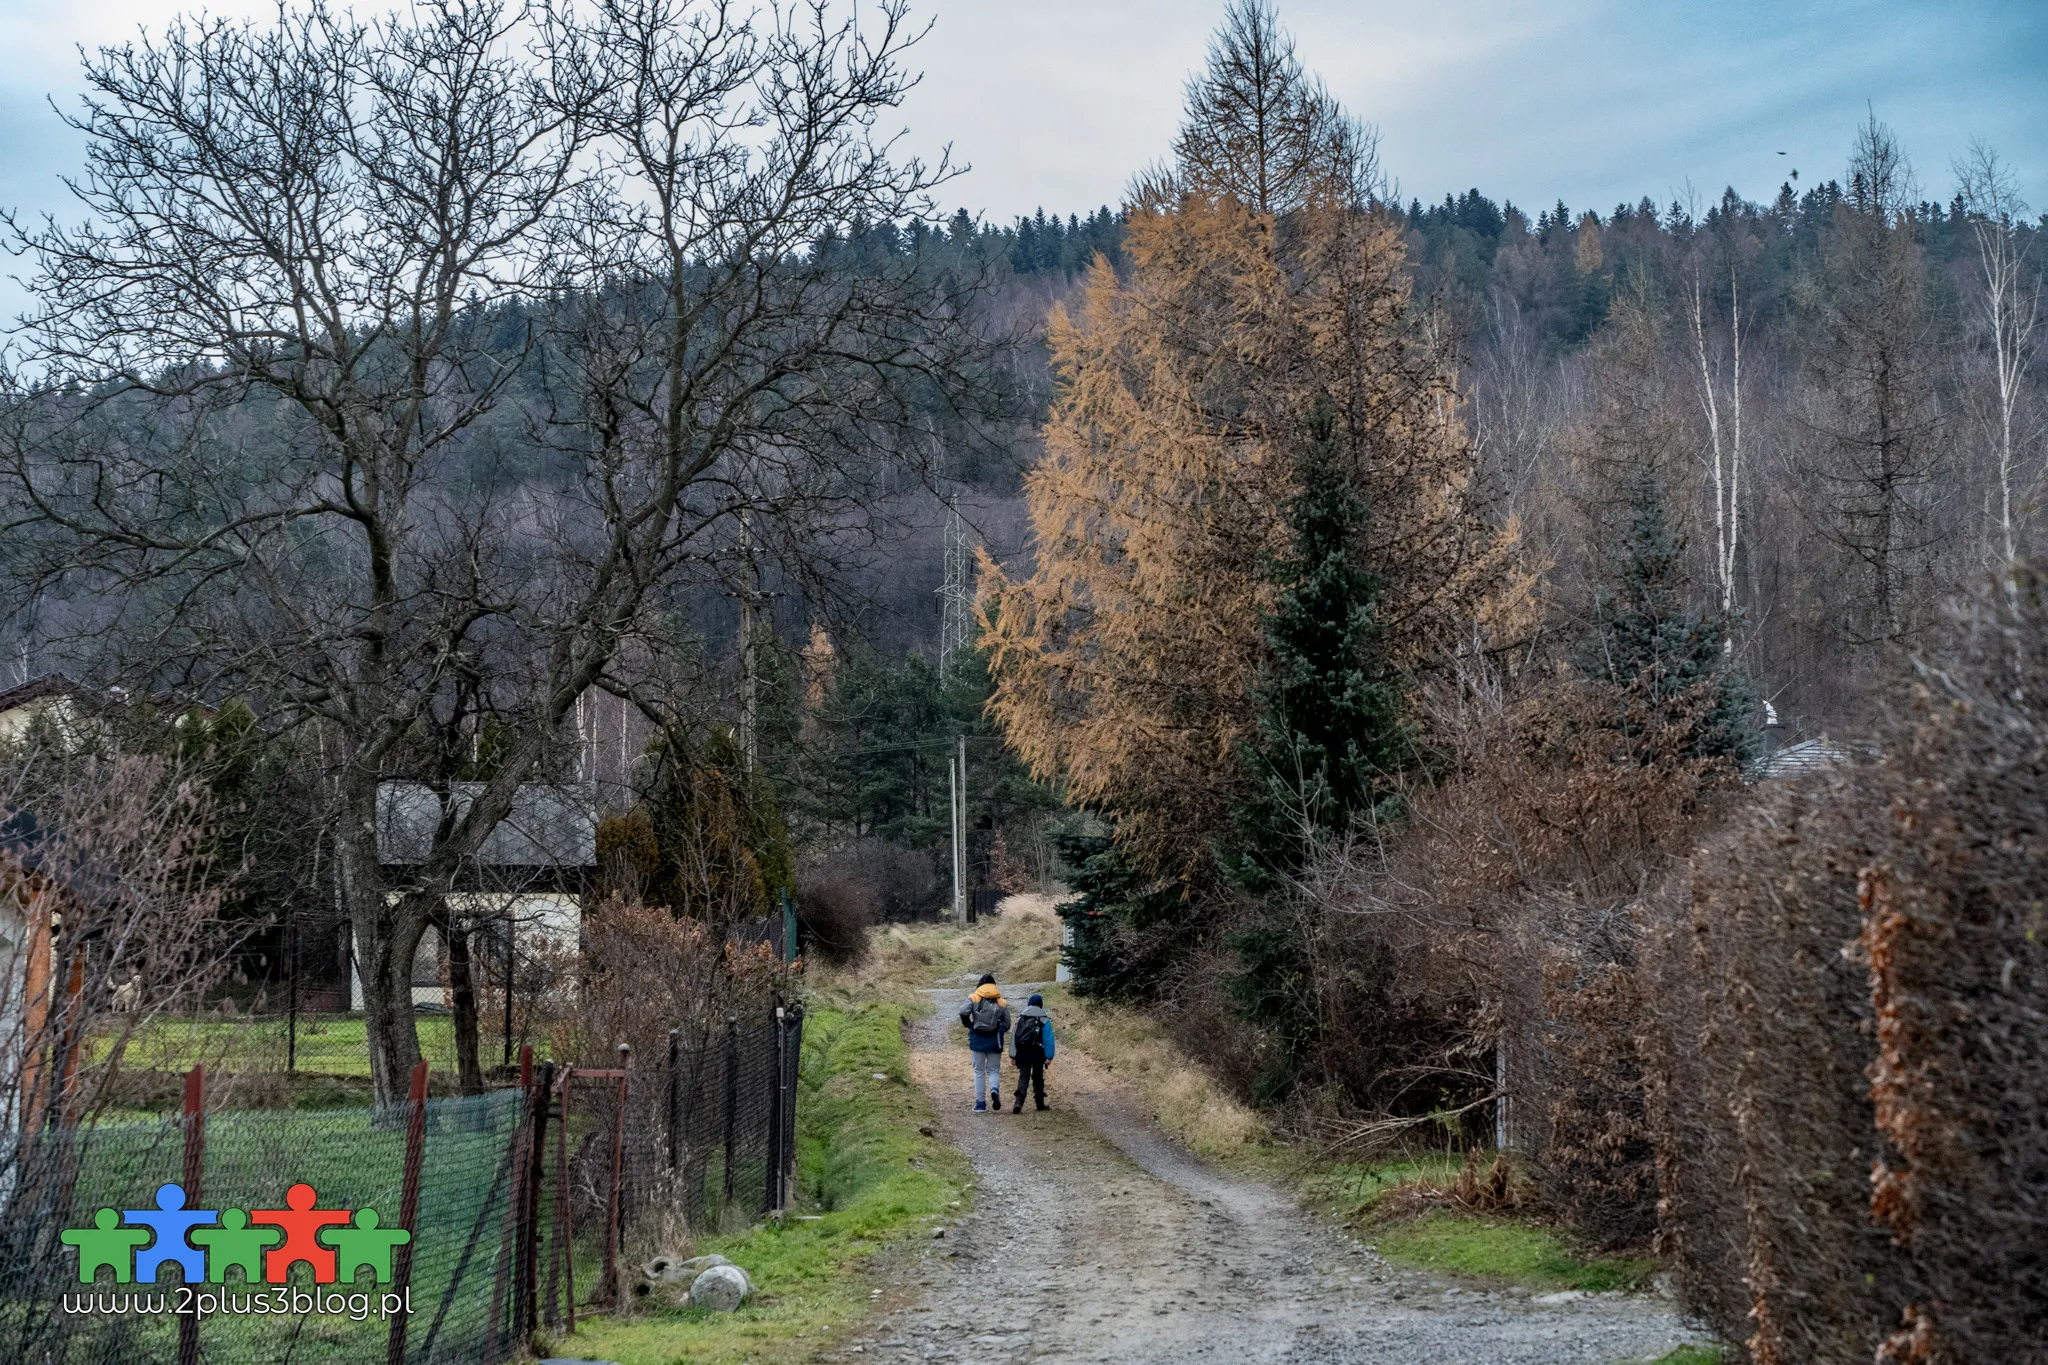 Górska pętla prowadząca na Magurkę Wilkowicką to urozmaicona i nieforsowna trasa dla rodziny z przyjemnymi widokami na Beskidy: Niski, Śląski, Żywiecki